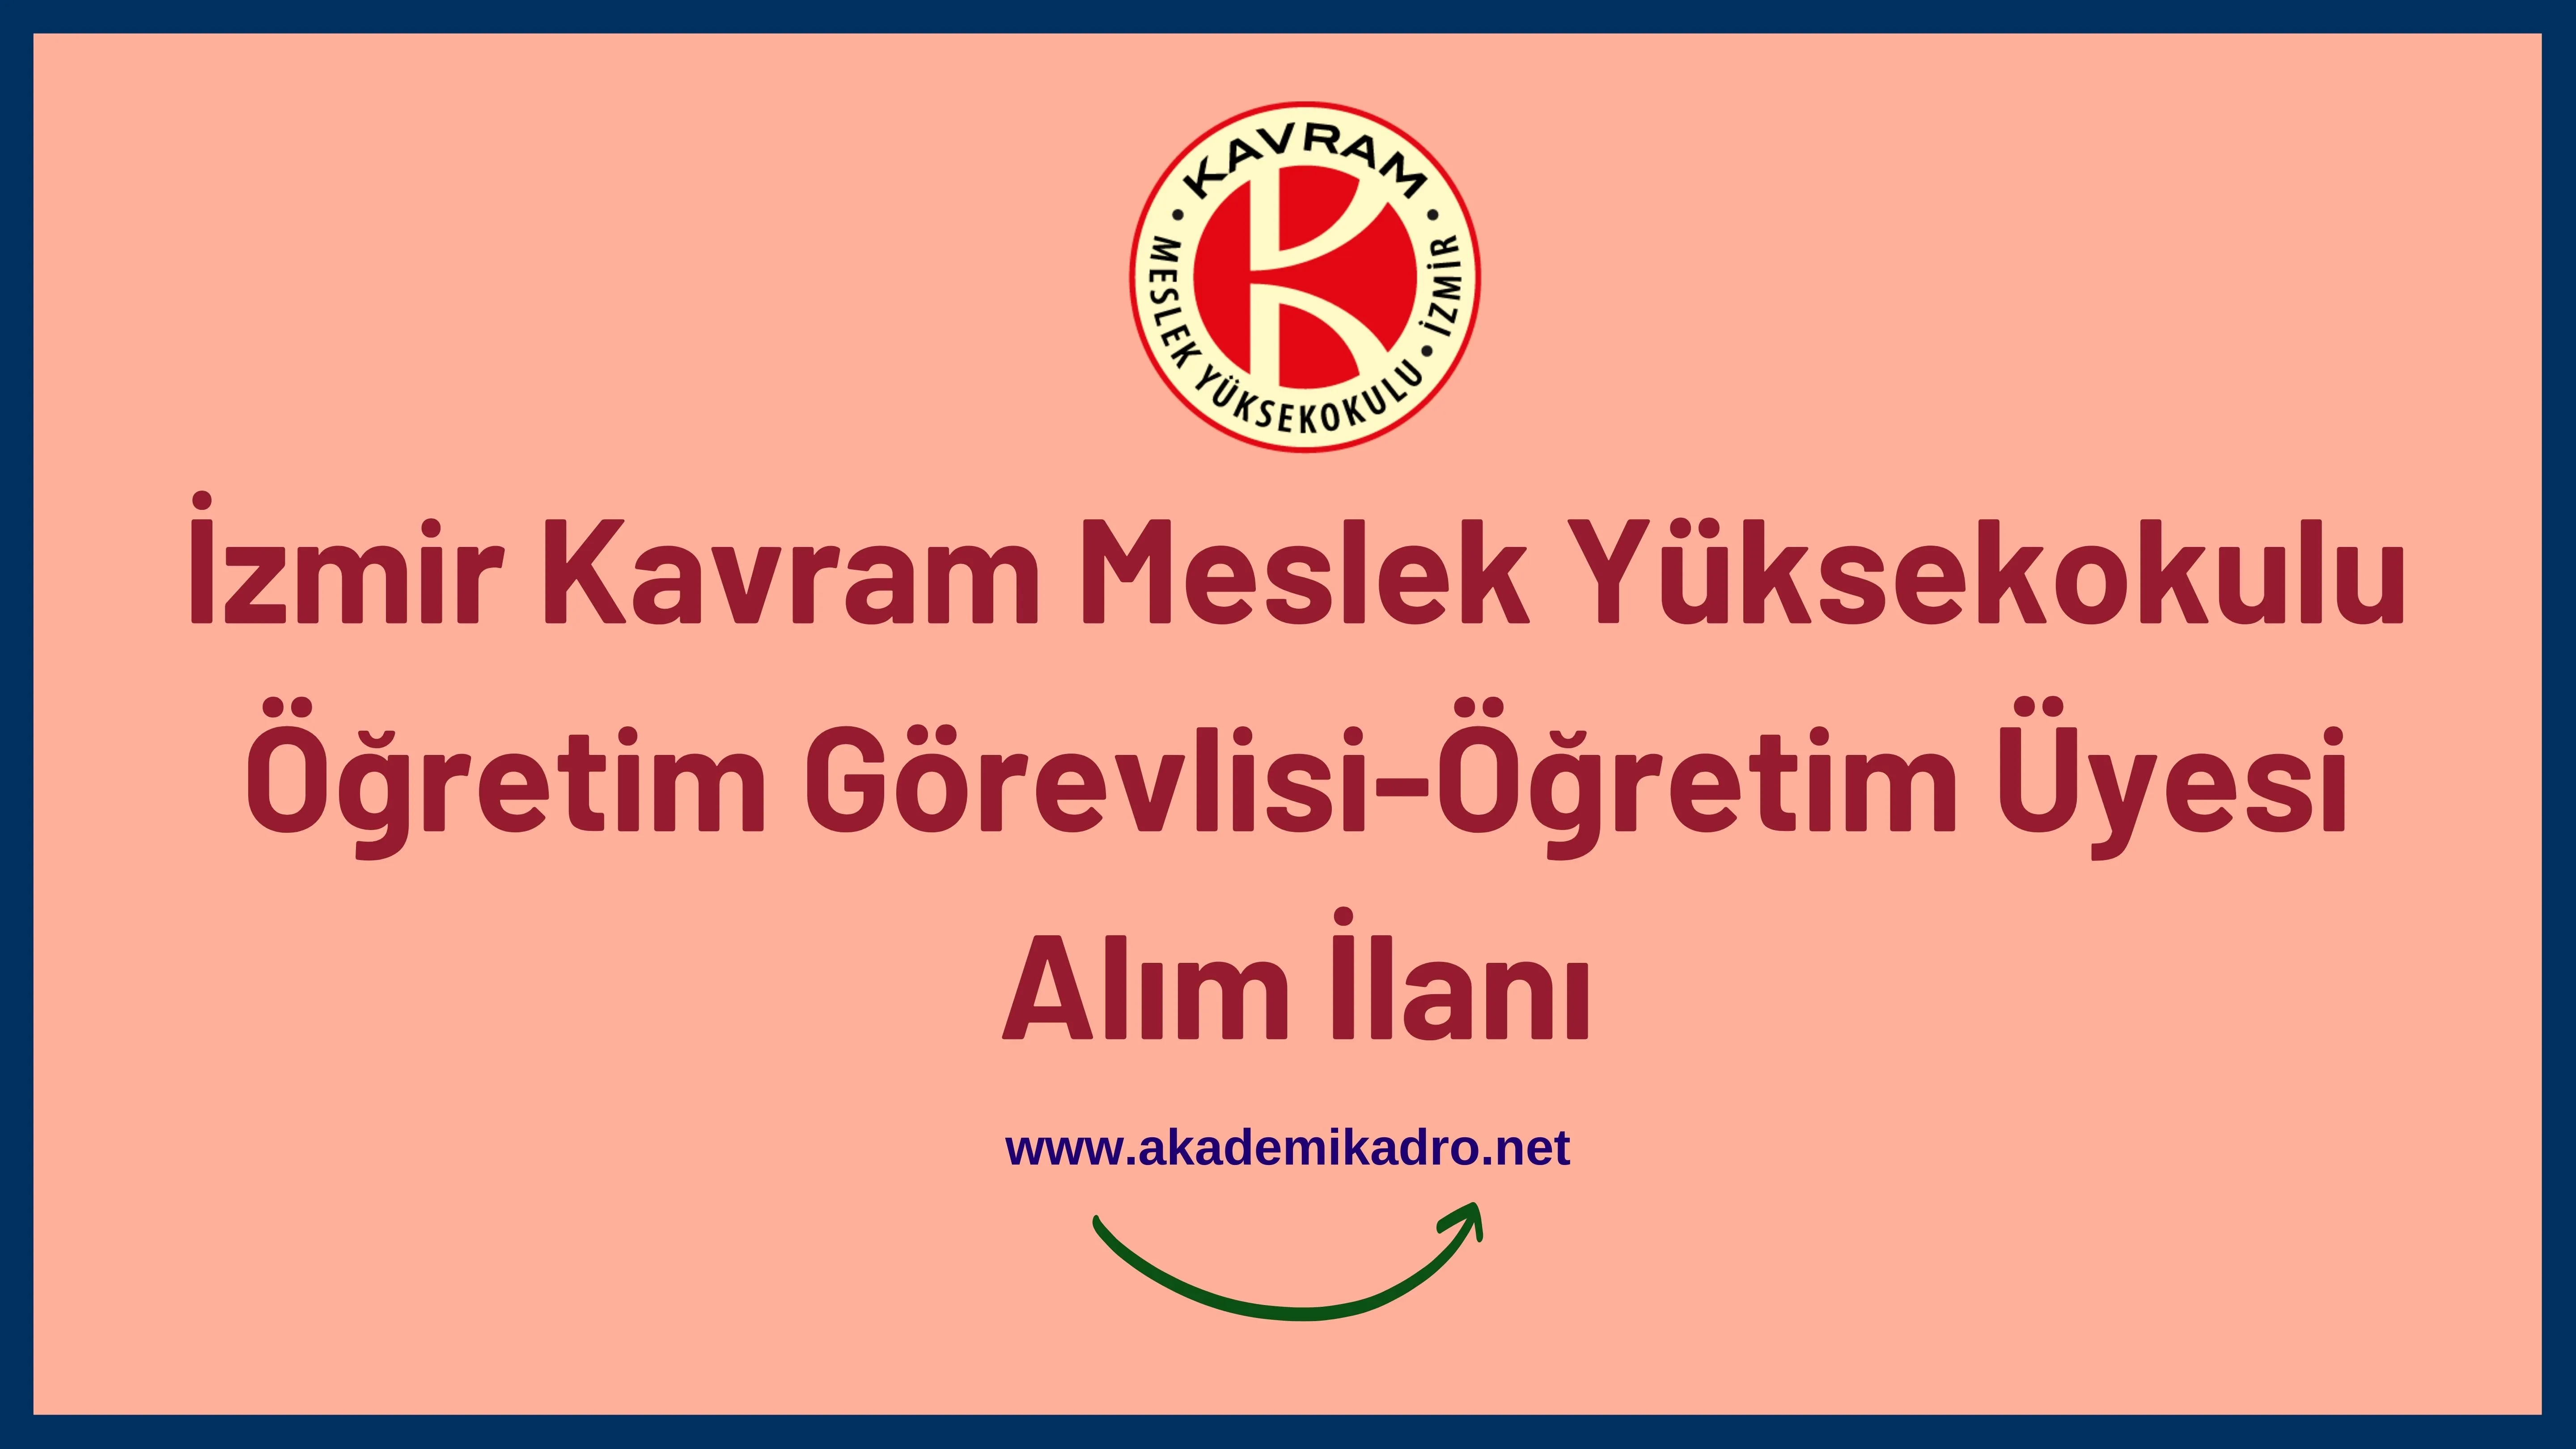 İzmir Kavram Meslek Yüksekokulu Öğretim görevlisi alacak.